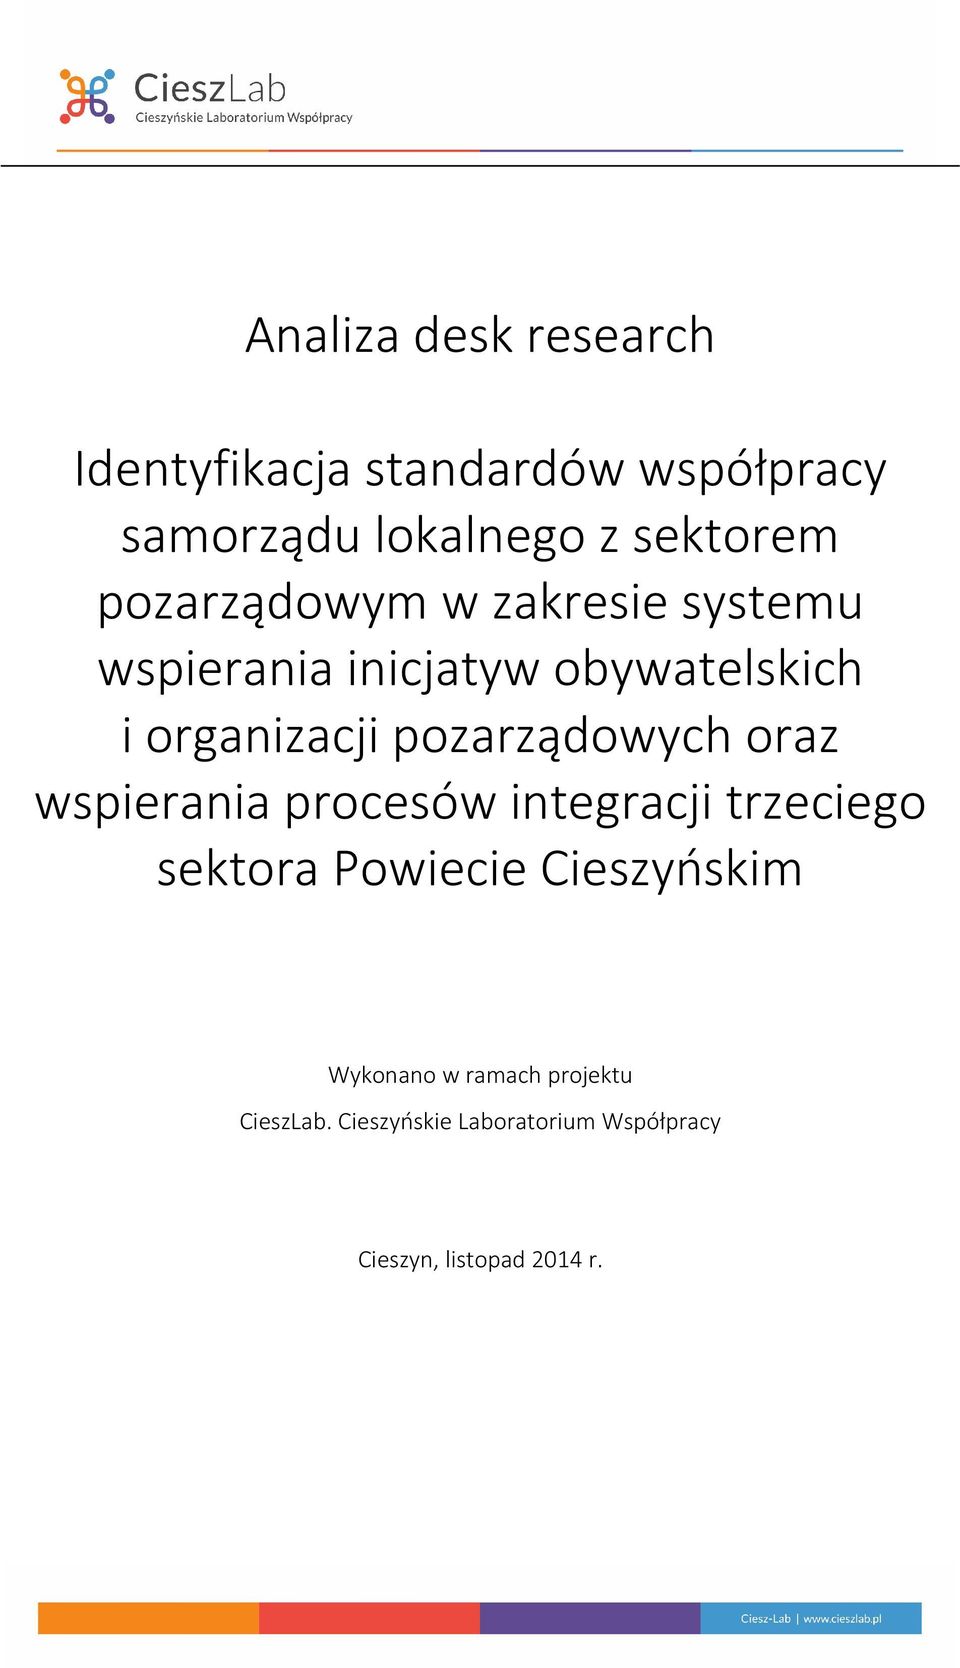 pozarządowych oraz wspierania procesów integracji trzeciego sektora Powiecie Cieszyńskim